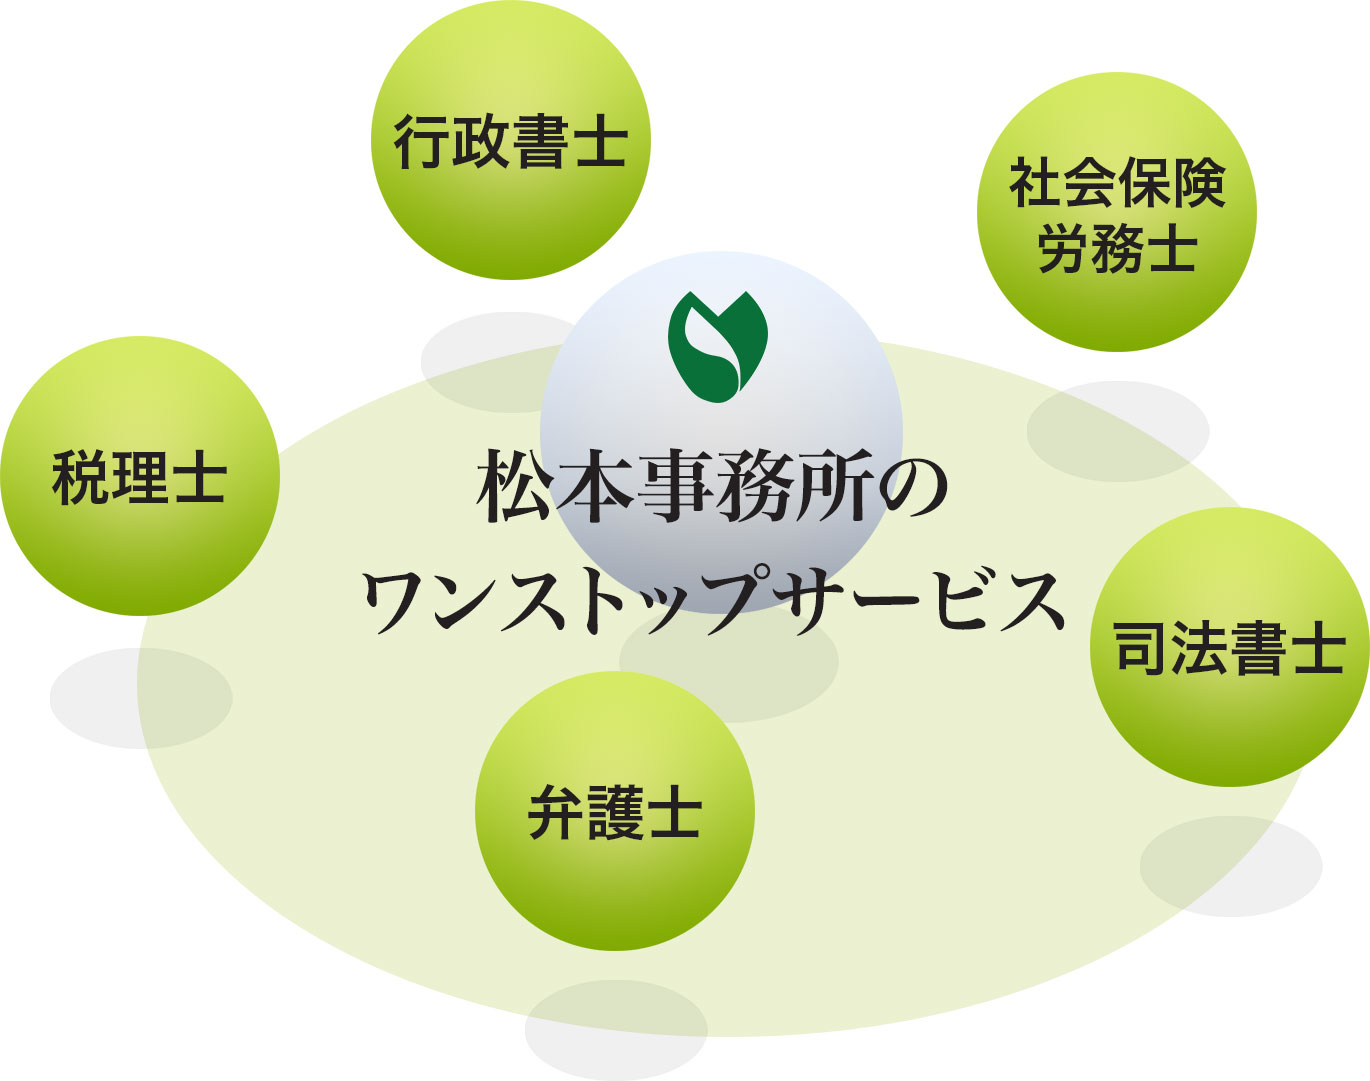 松本事務所業務内容の図